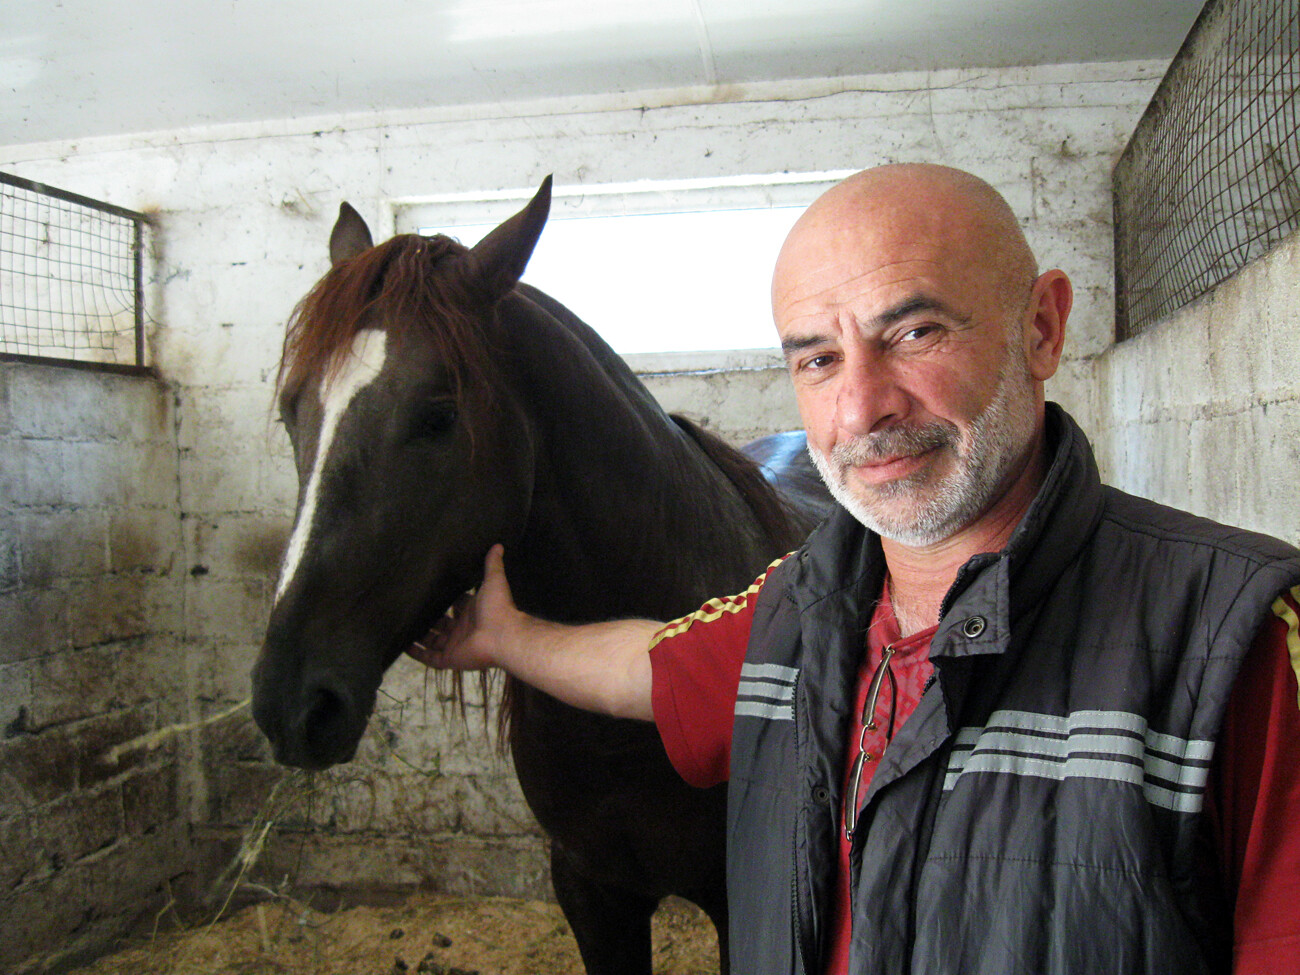 La capacidad creativa no es el único rasgo nacional de los osetios. Álik Pagáiev afirma que todos los osetios llevan en la sangre aptitudes militares y talento para trabajar con caballos.